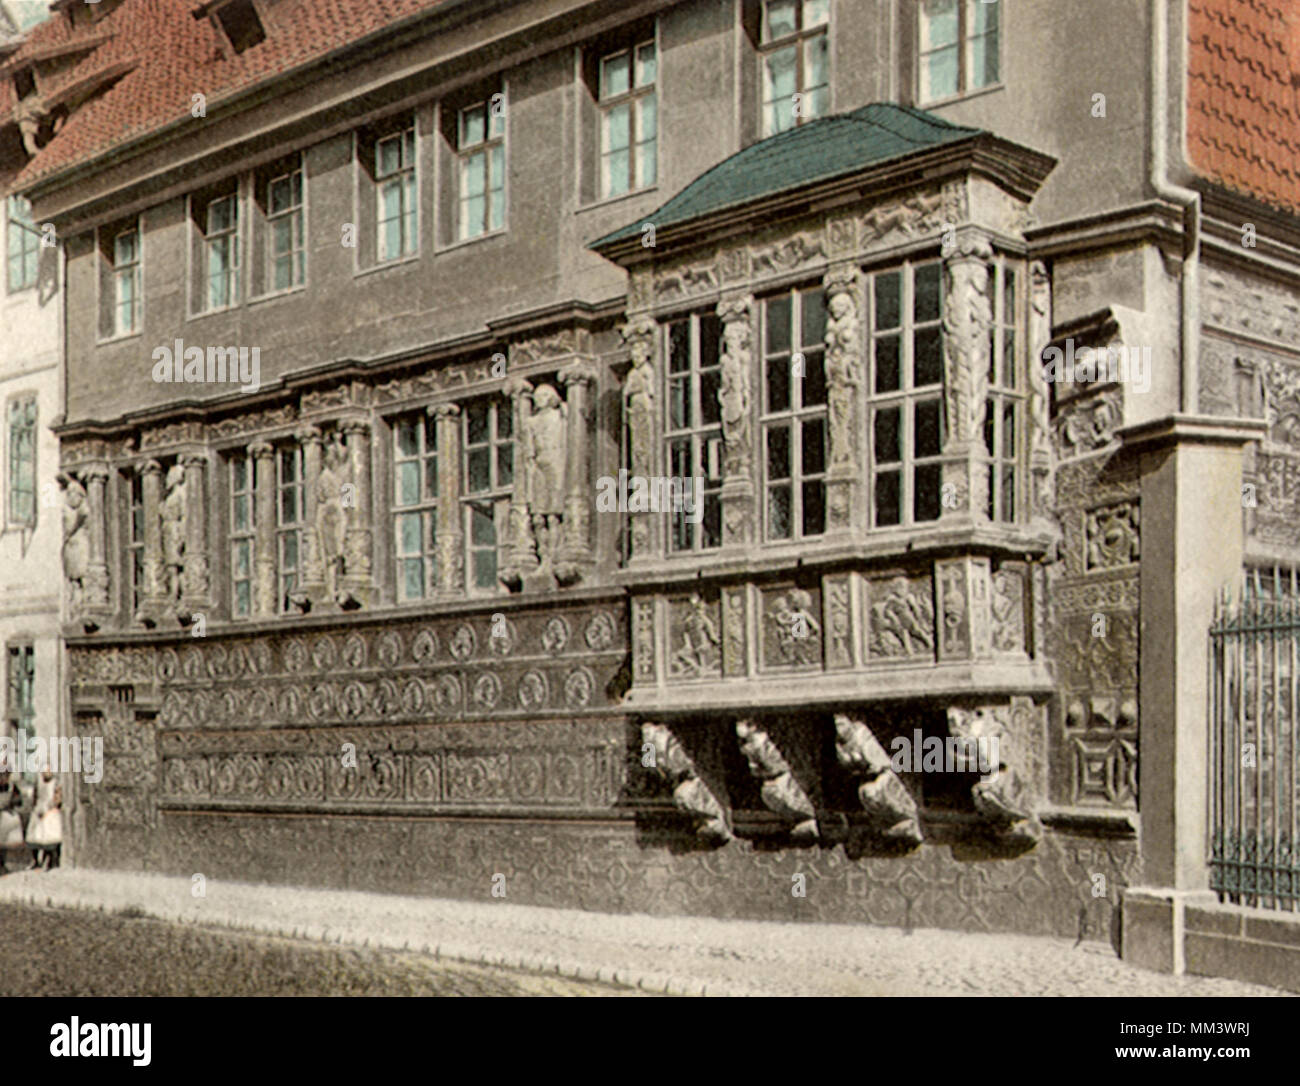 Chambre avec des peintures de l'empereur. Hildesheim. 1910 Banque D'Images